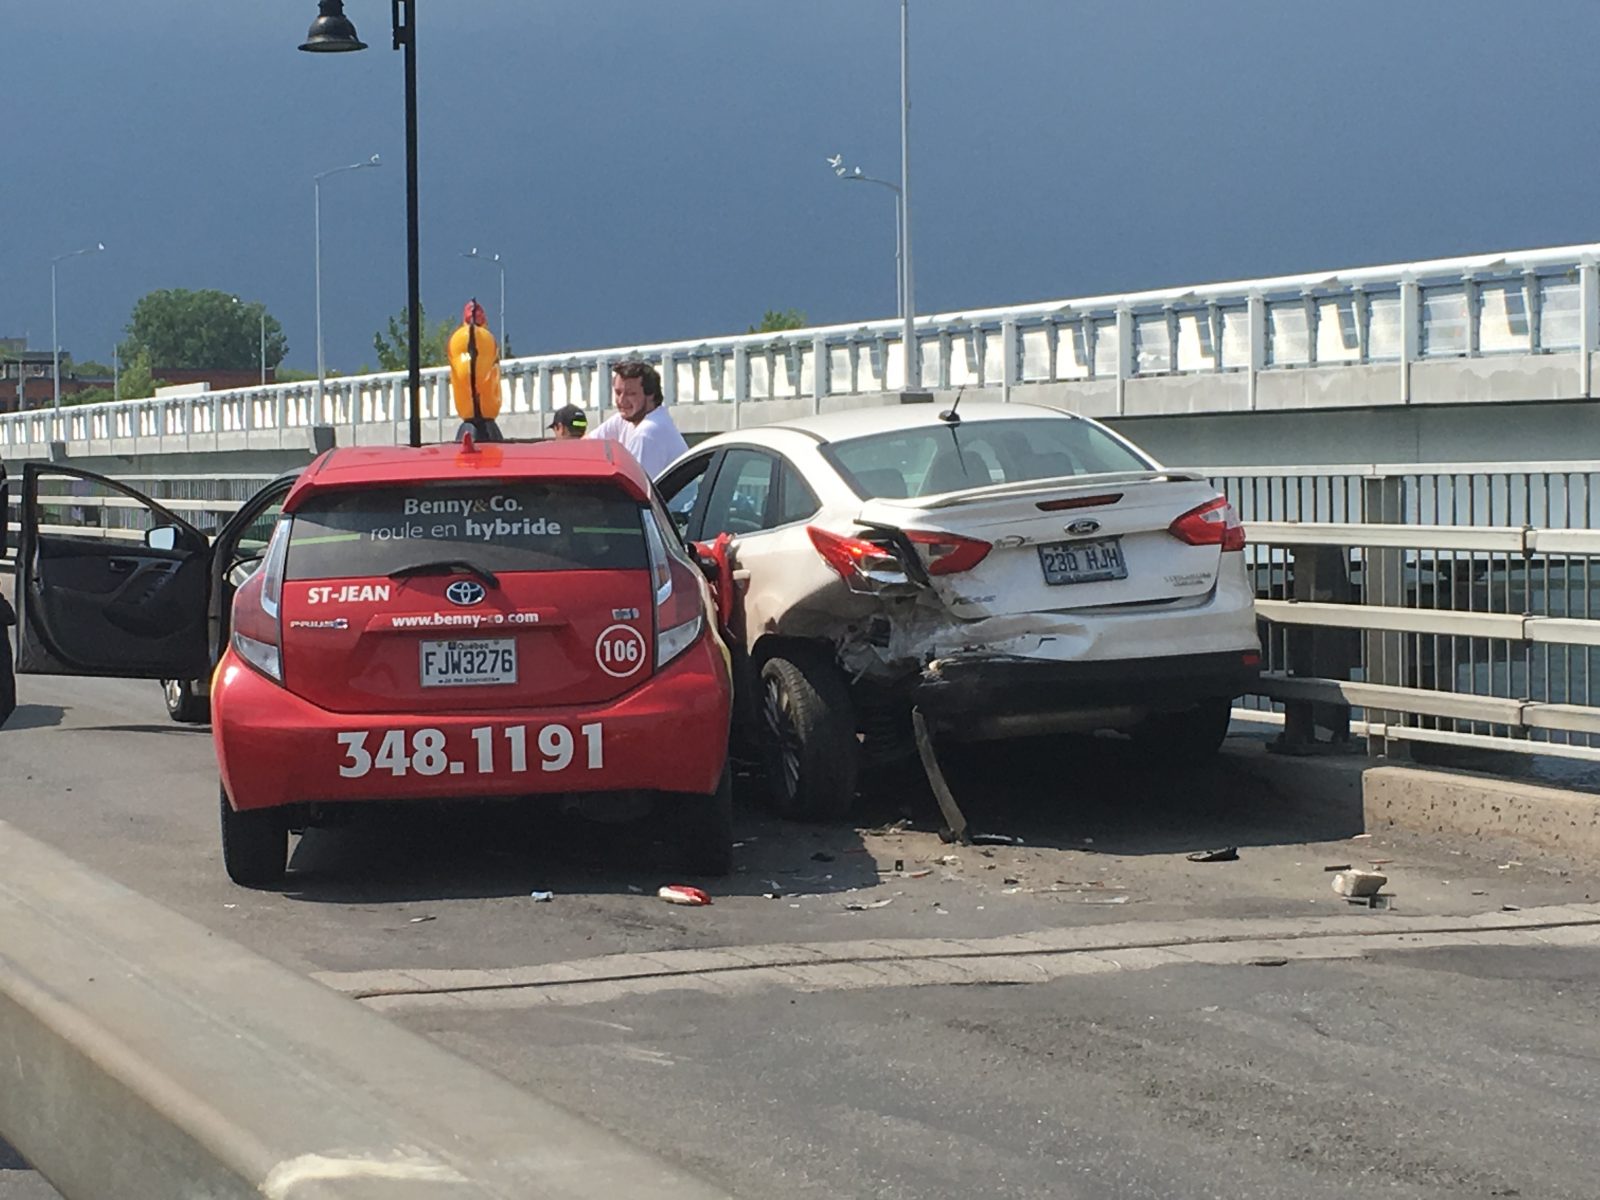 Trois véhicules impliqués dans un accident sur le pont